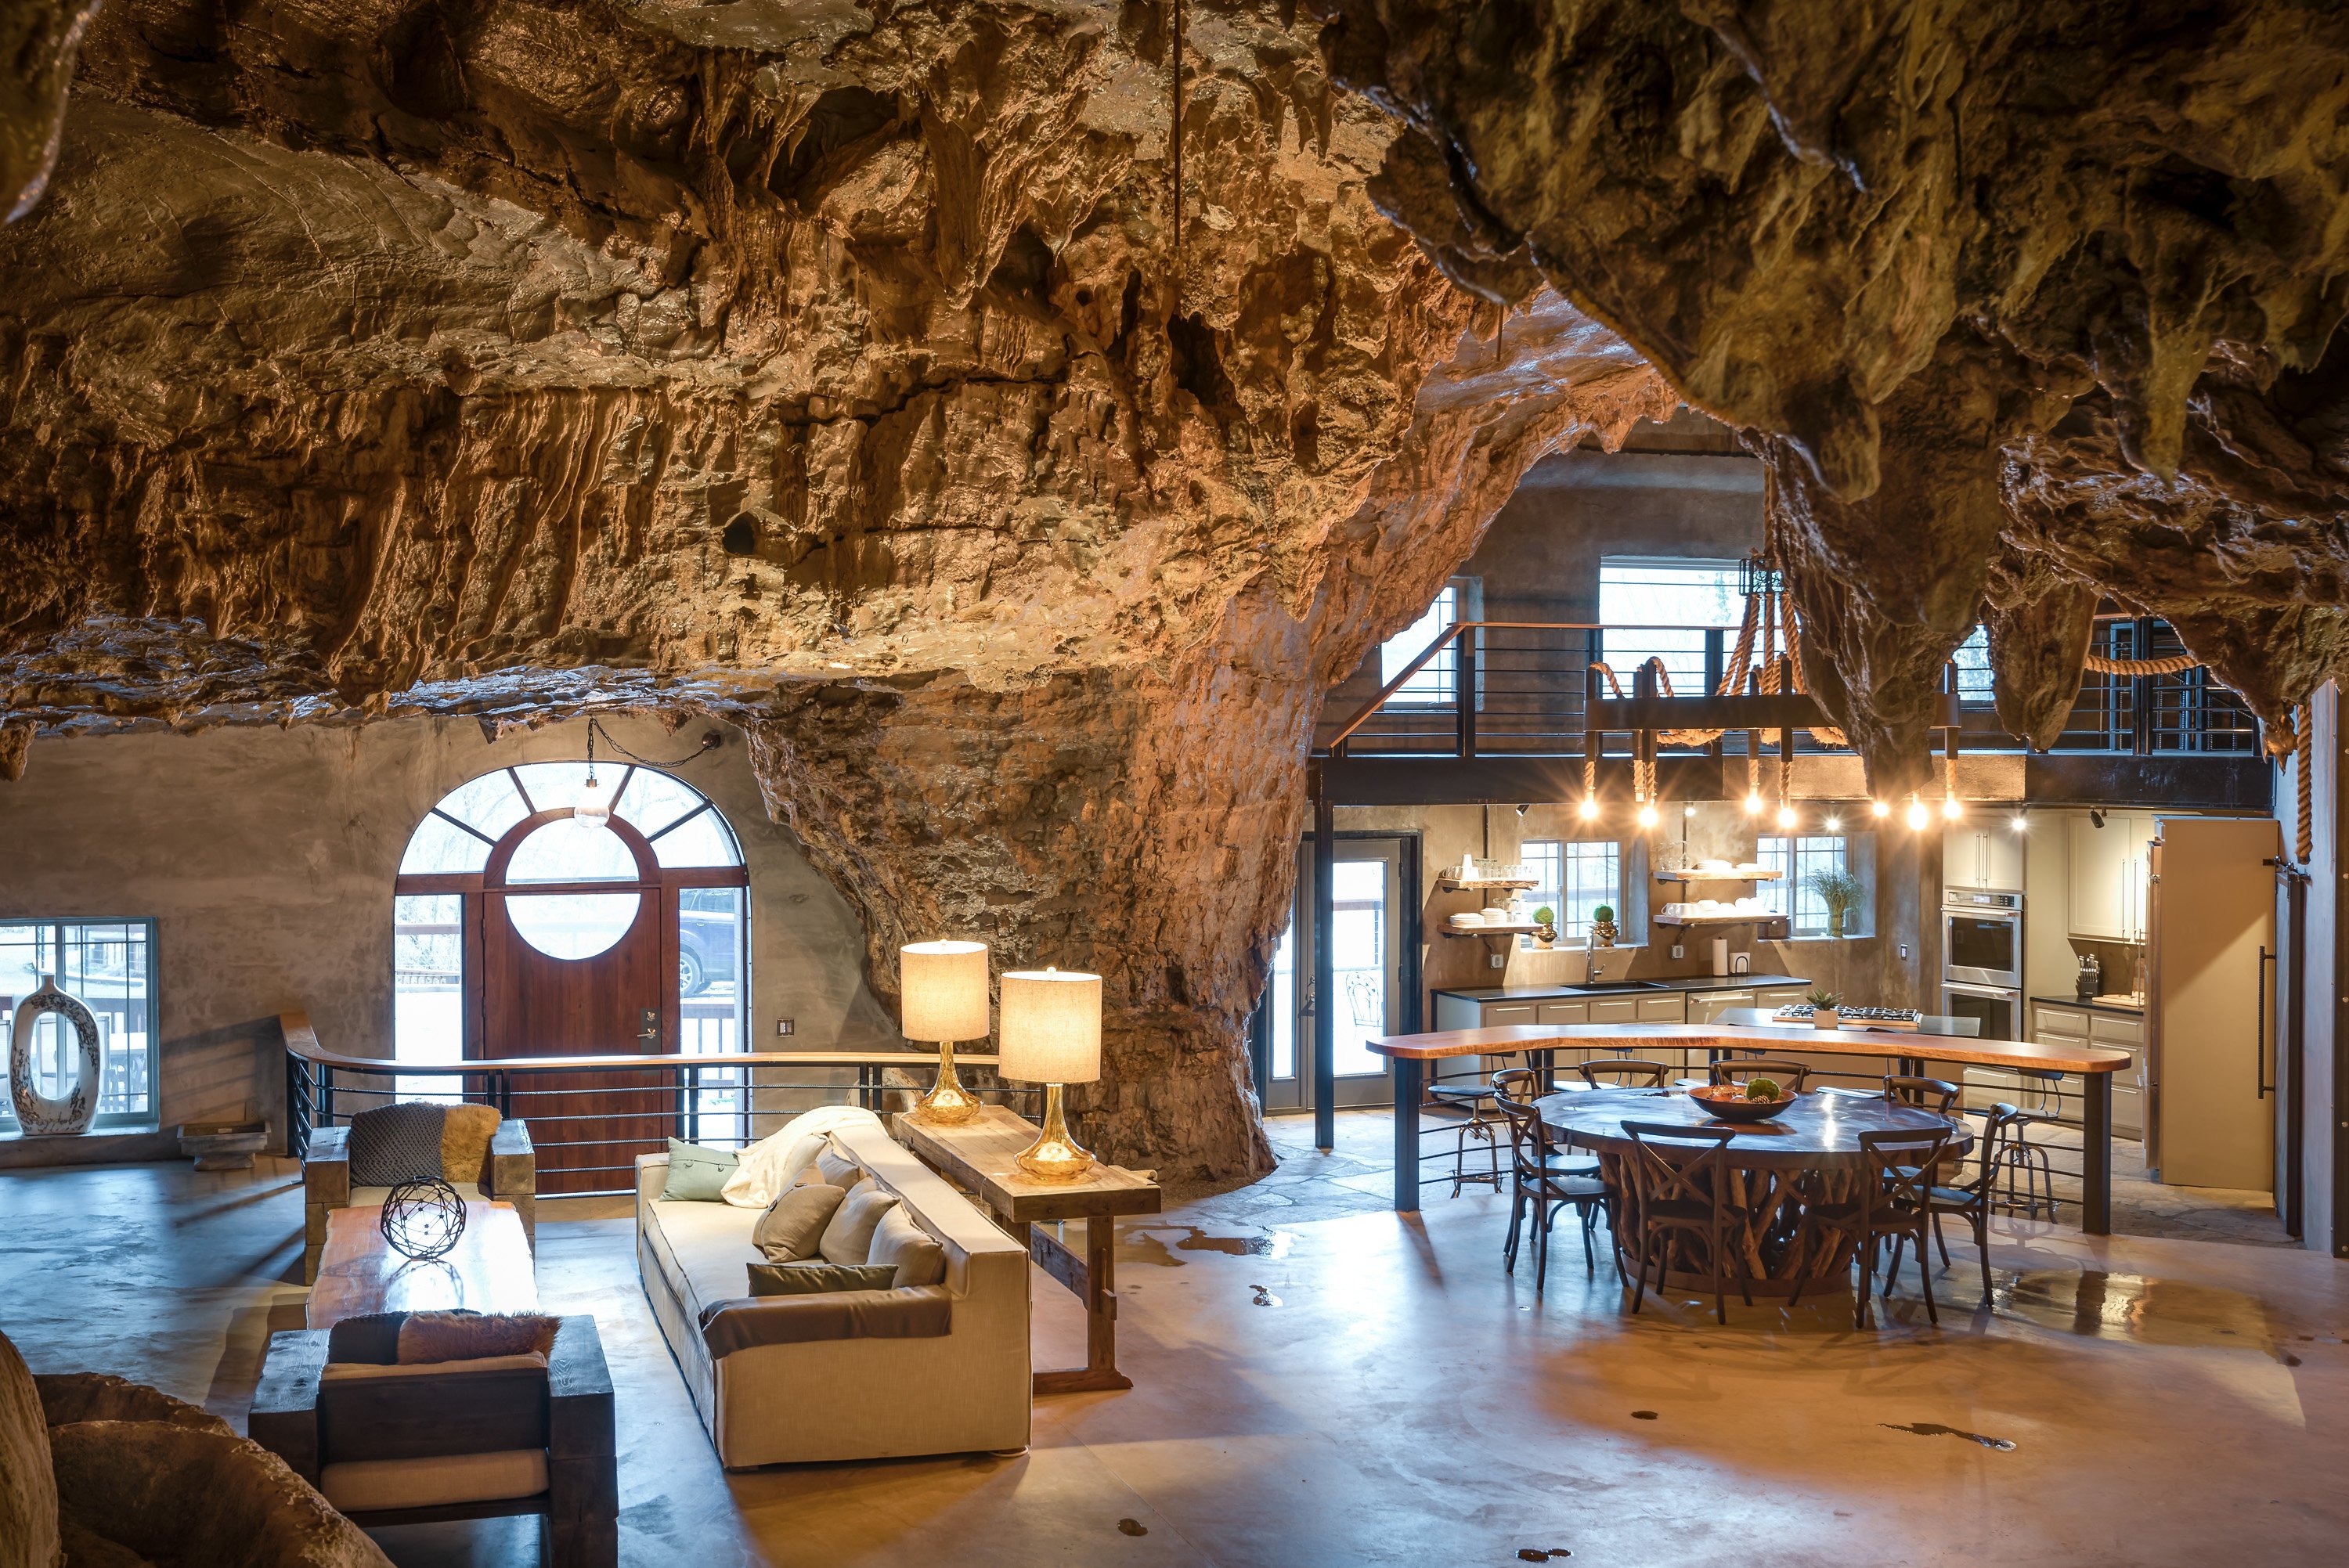 Cave home. Гостиница Beckham Creek Cave Lodge. Beckham Creek Cave Lodge, США, Арканзас. Пещерный дворец Cave Palace Ranch, Юта, США. Дом в пещере.